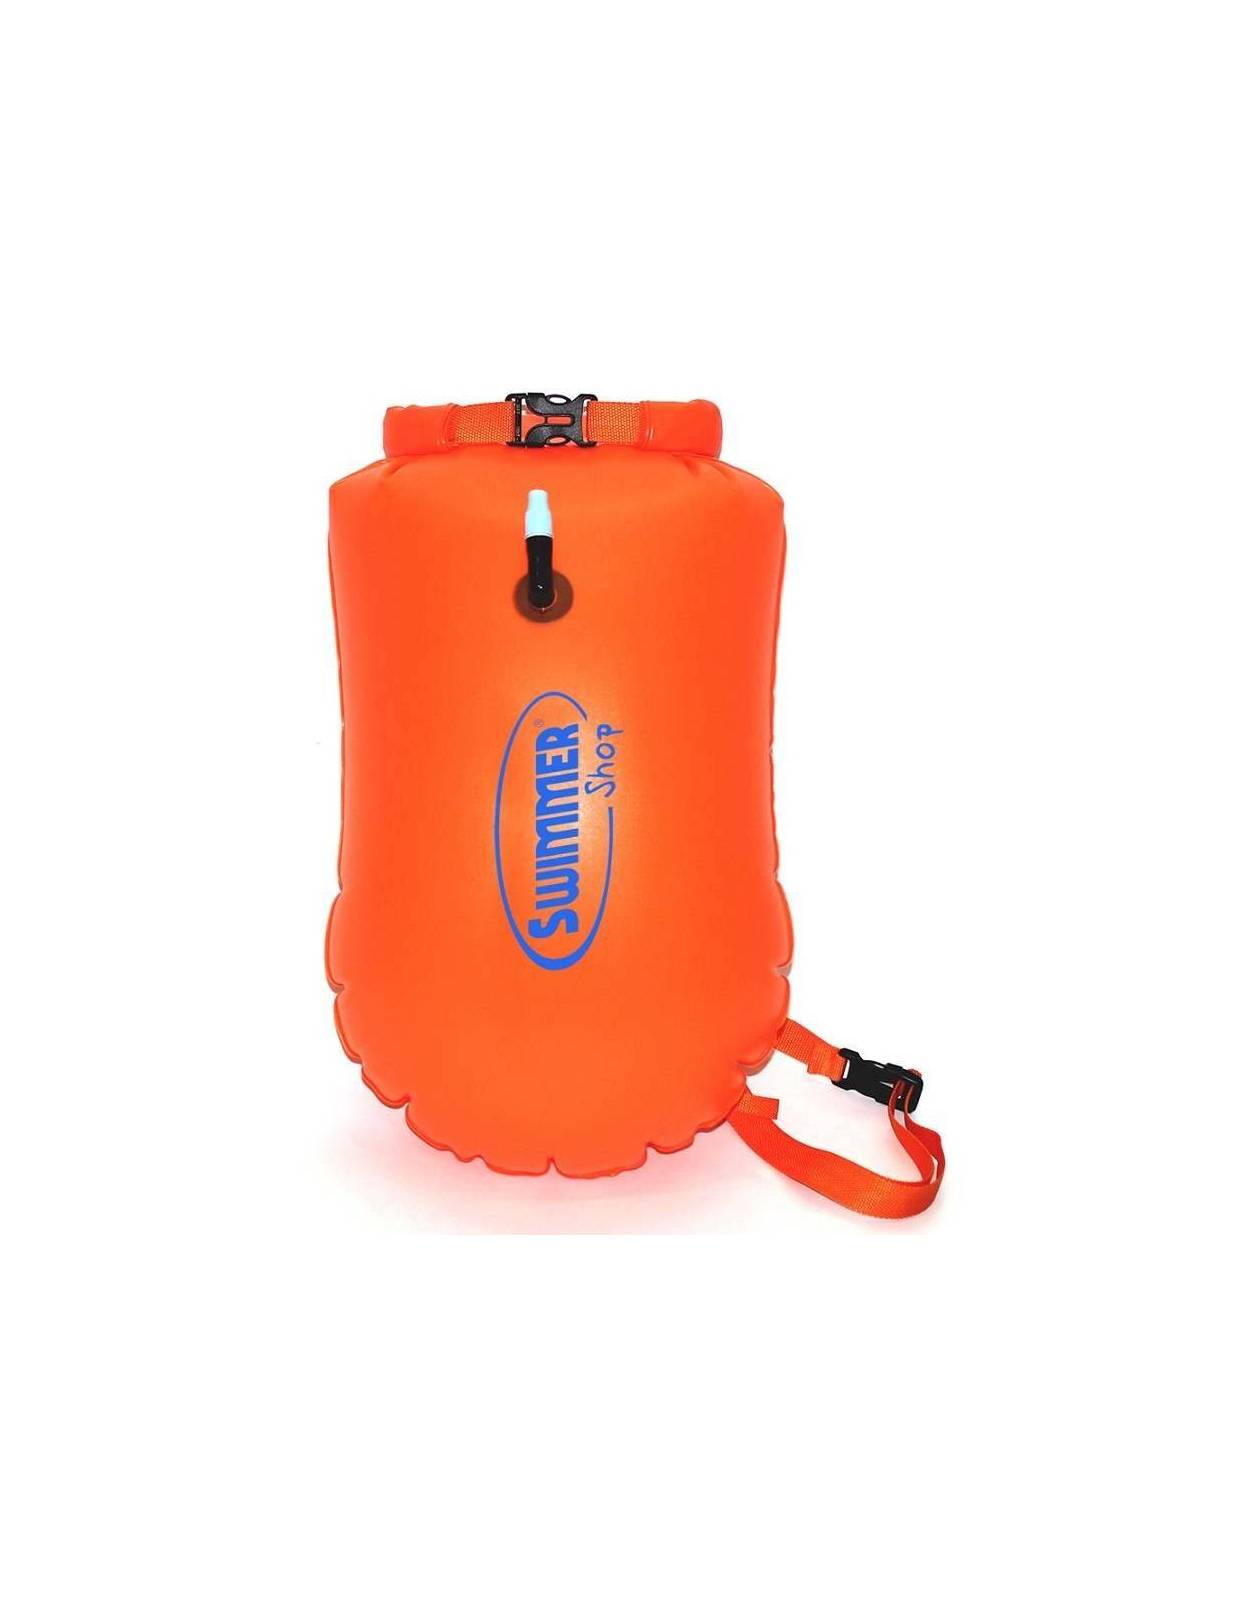 TATAFUN Nuoto Boa con Tasca Impermeabile 20L Orange per Acque Libere Nuotatori in Mare Aperto Triatleti Molto Visibile Boa di Sicurezza Ultraleggera della Nuotata Tow Float